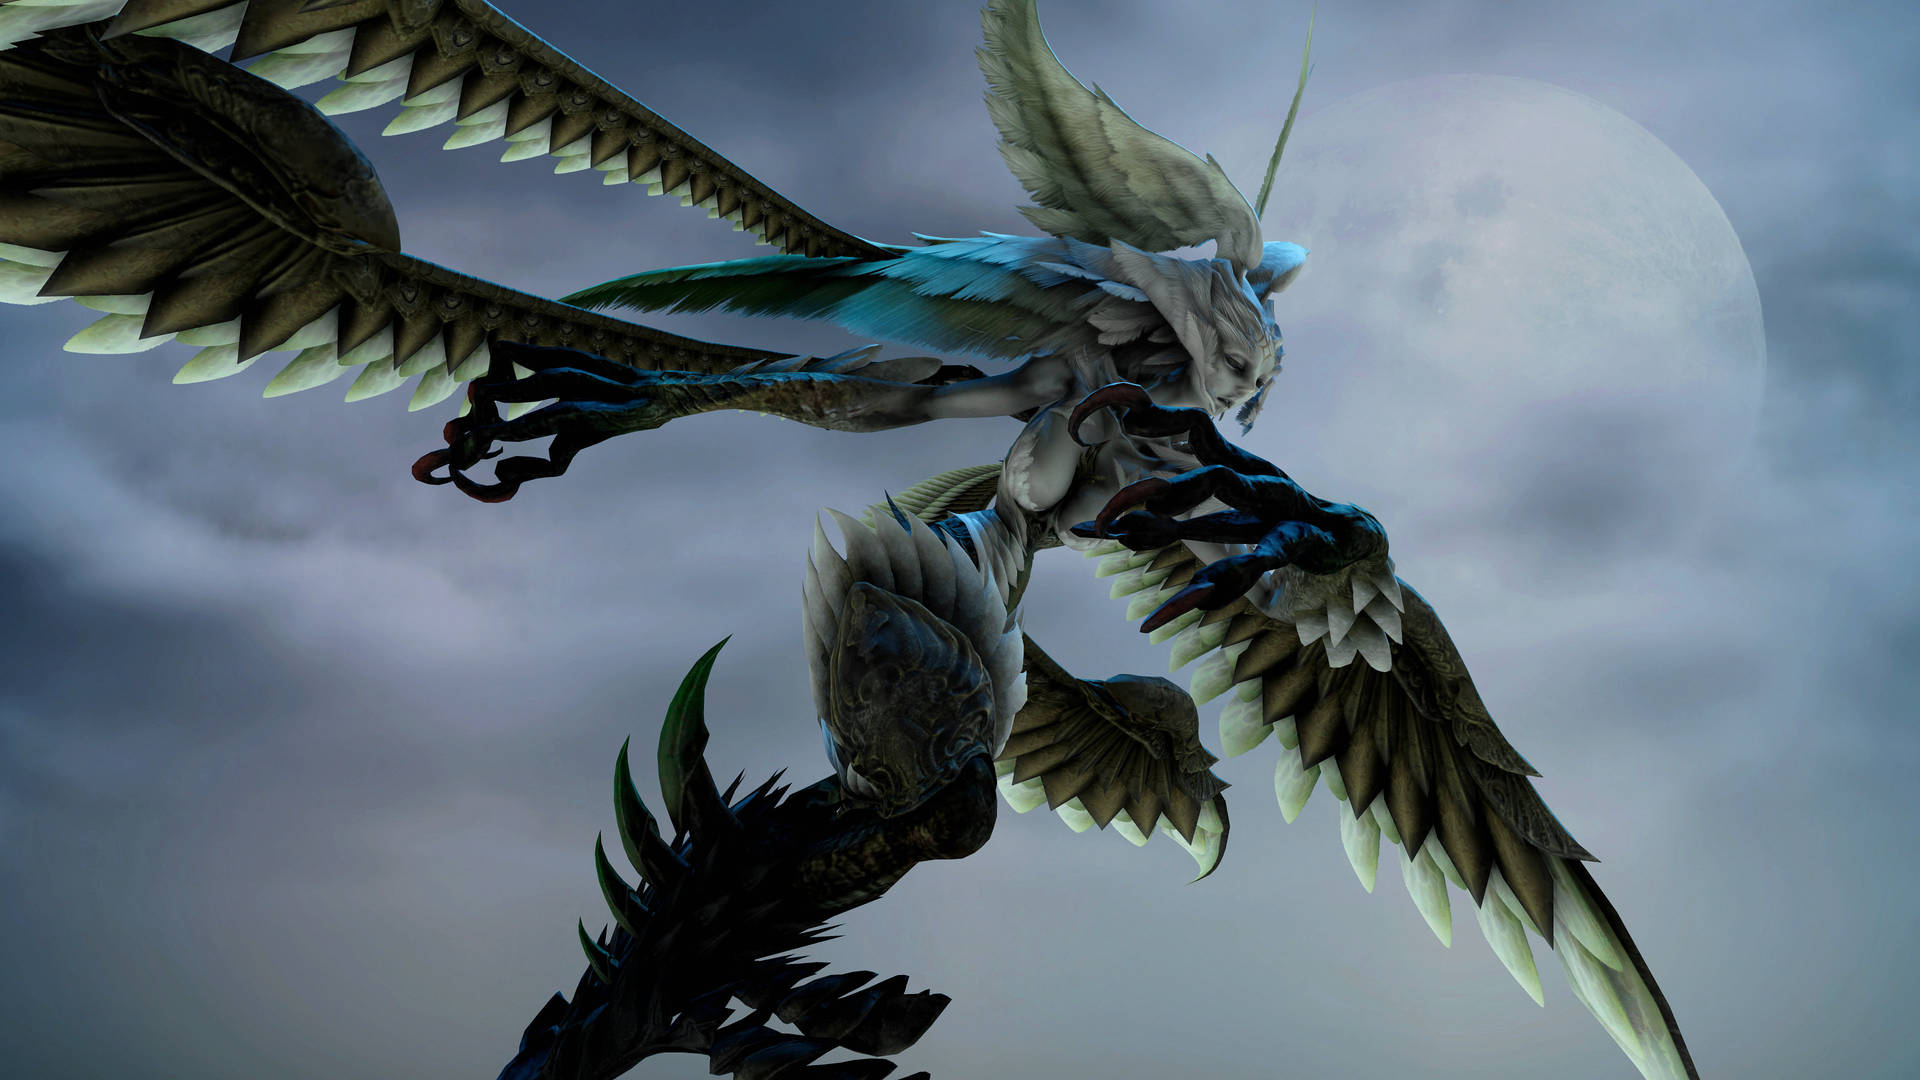 Final Fantasy Garuda Mid-flight Wallpaper